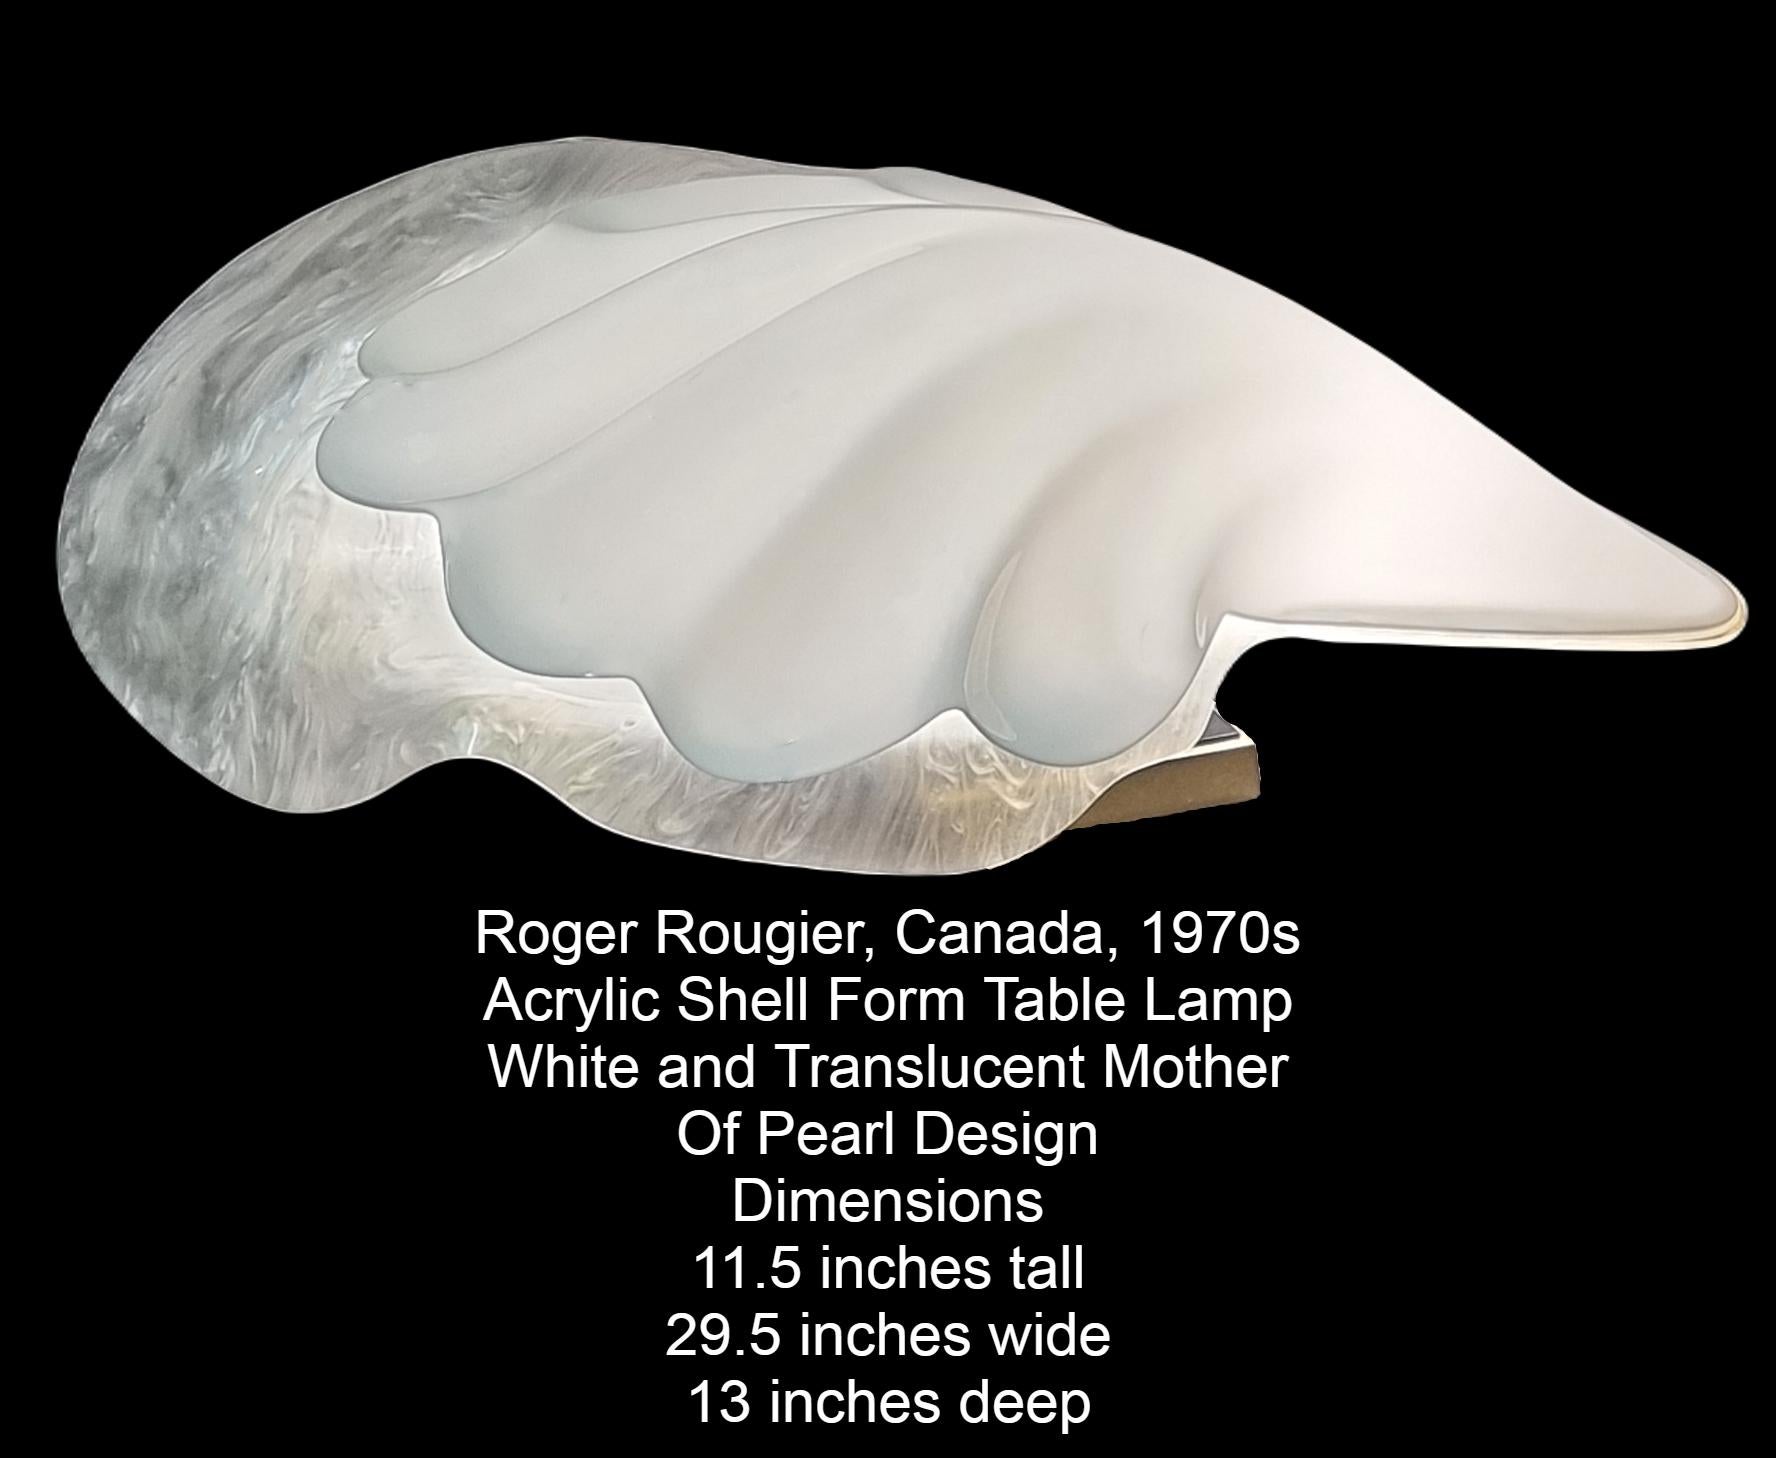 Vintage Roger Rougier Acryl Muschel Form Tischlampe.
Obere Hälfte aus weißem Acryl, untere Hälfte durchscheinend, marmorierte Schnüre in Weiß und Grau, die die Illusion eines Perlmutt-Looks erzeugen.
Auf schwarzem Acryl und quadratischem